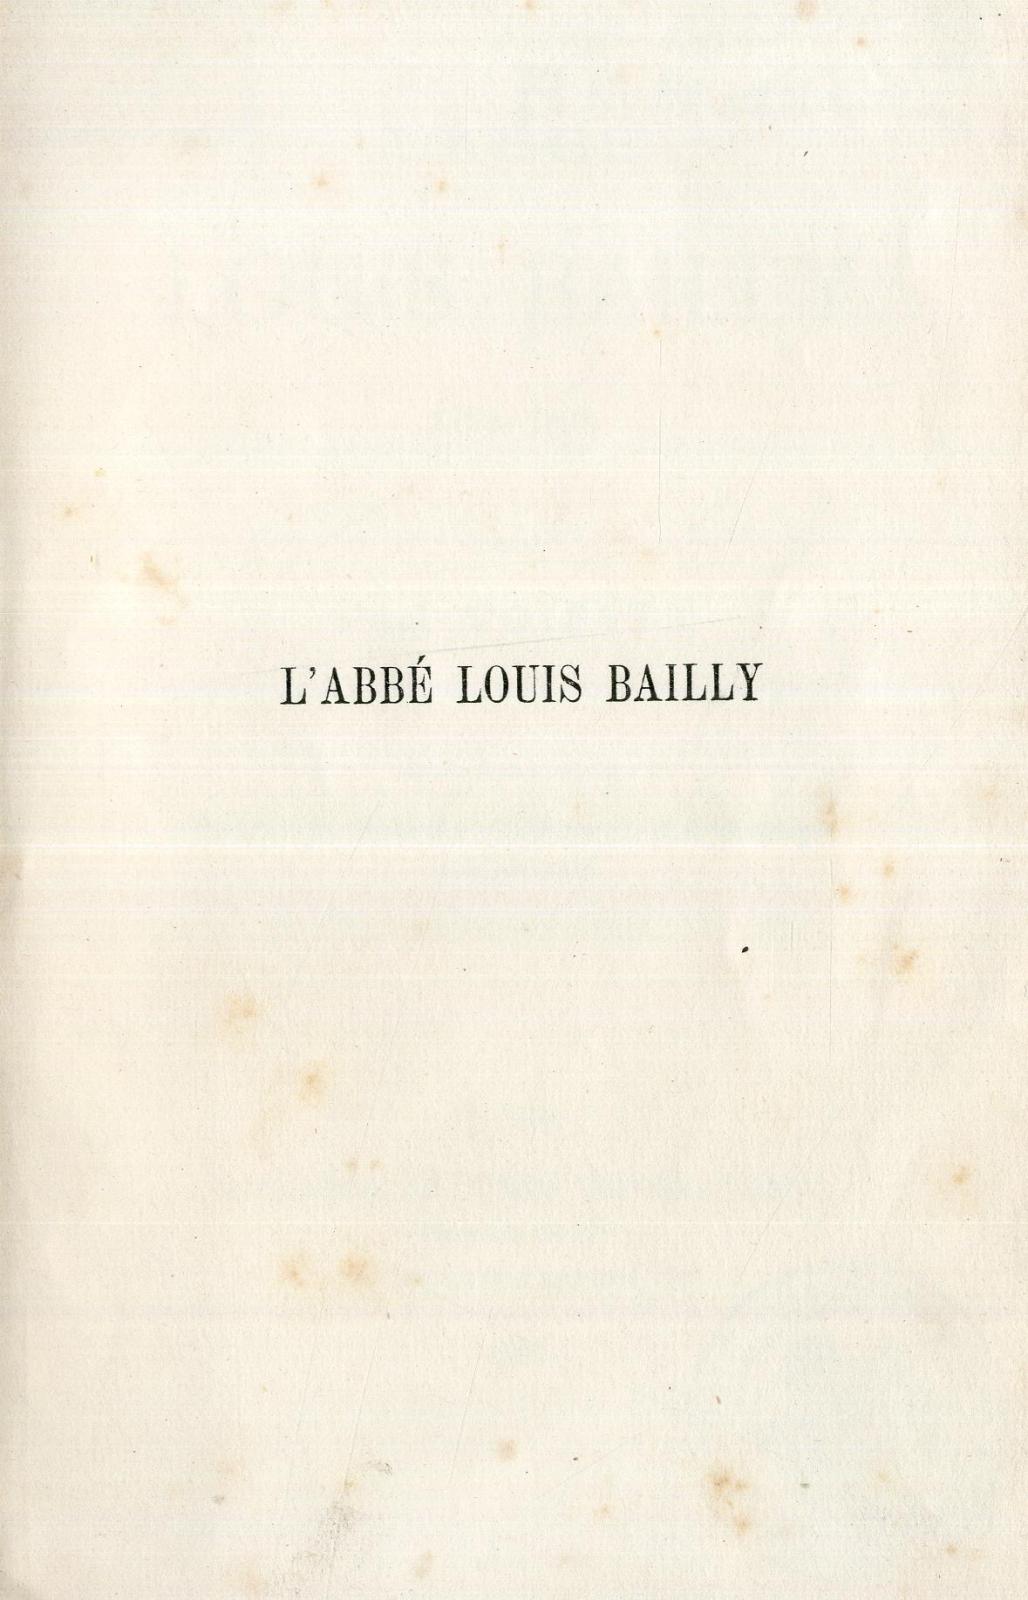 L'abbé Louis Bailly : 1730-1808 / par Paul Foisset